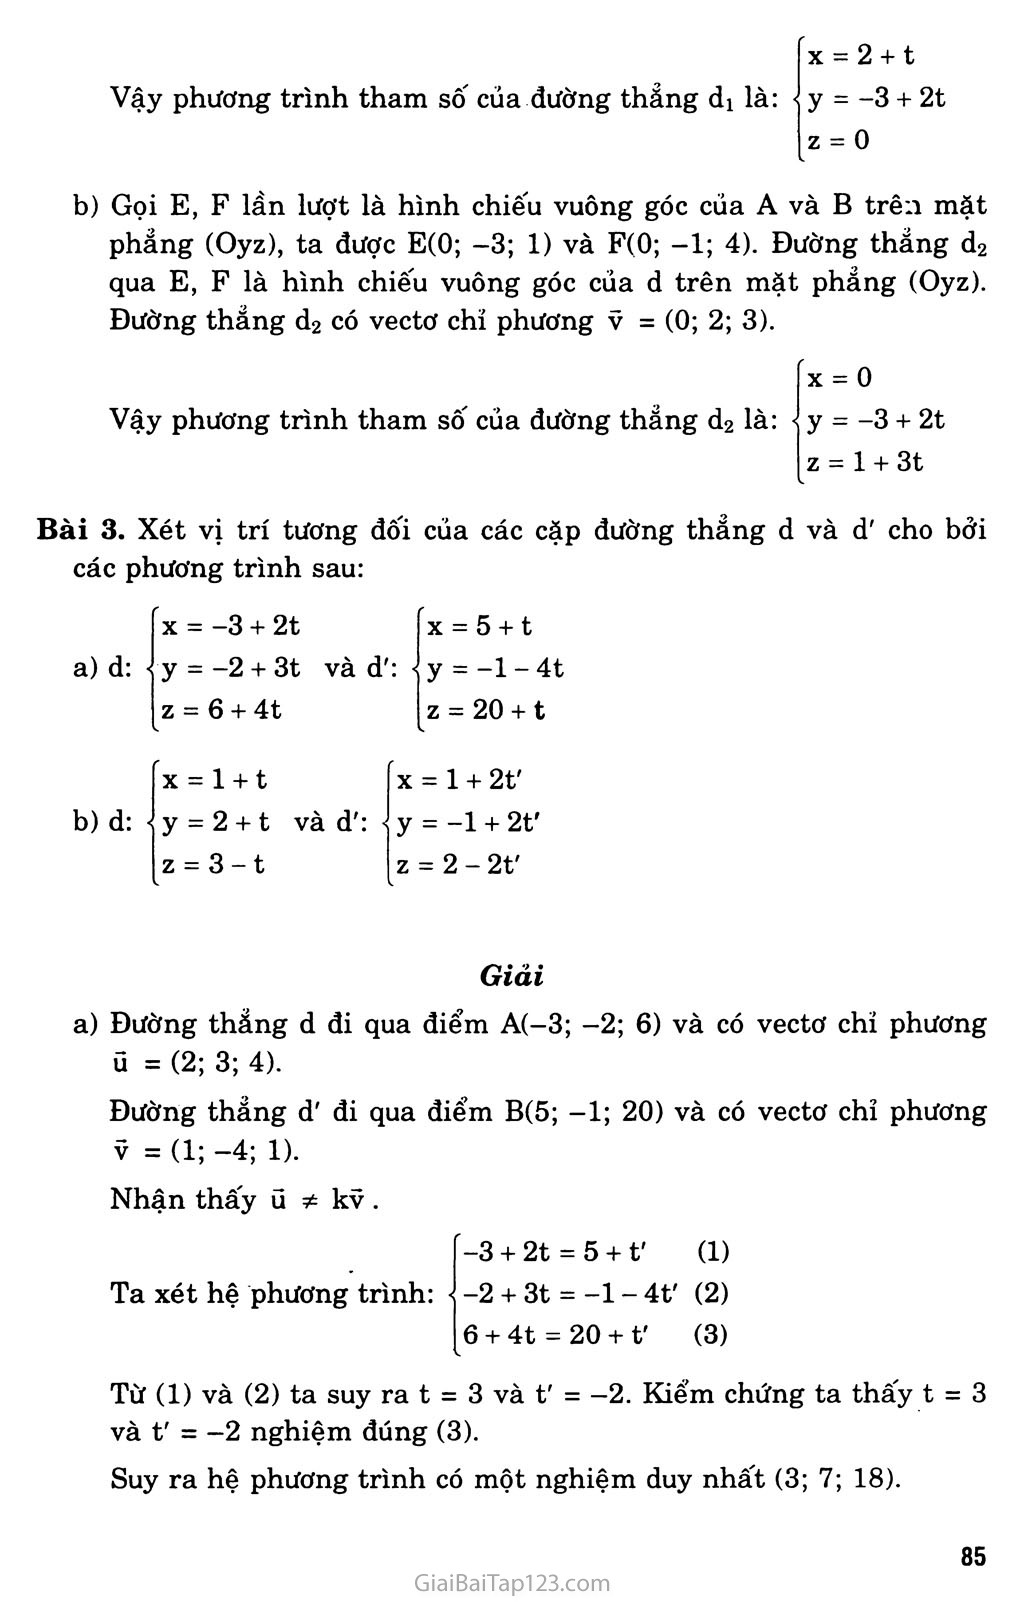 Bài 3. Phương trình của đường thẳng trang 5